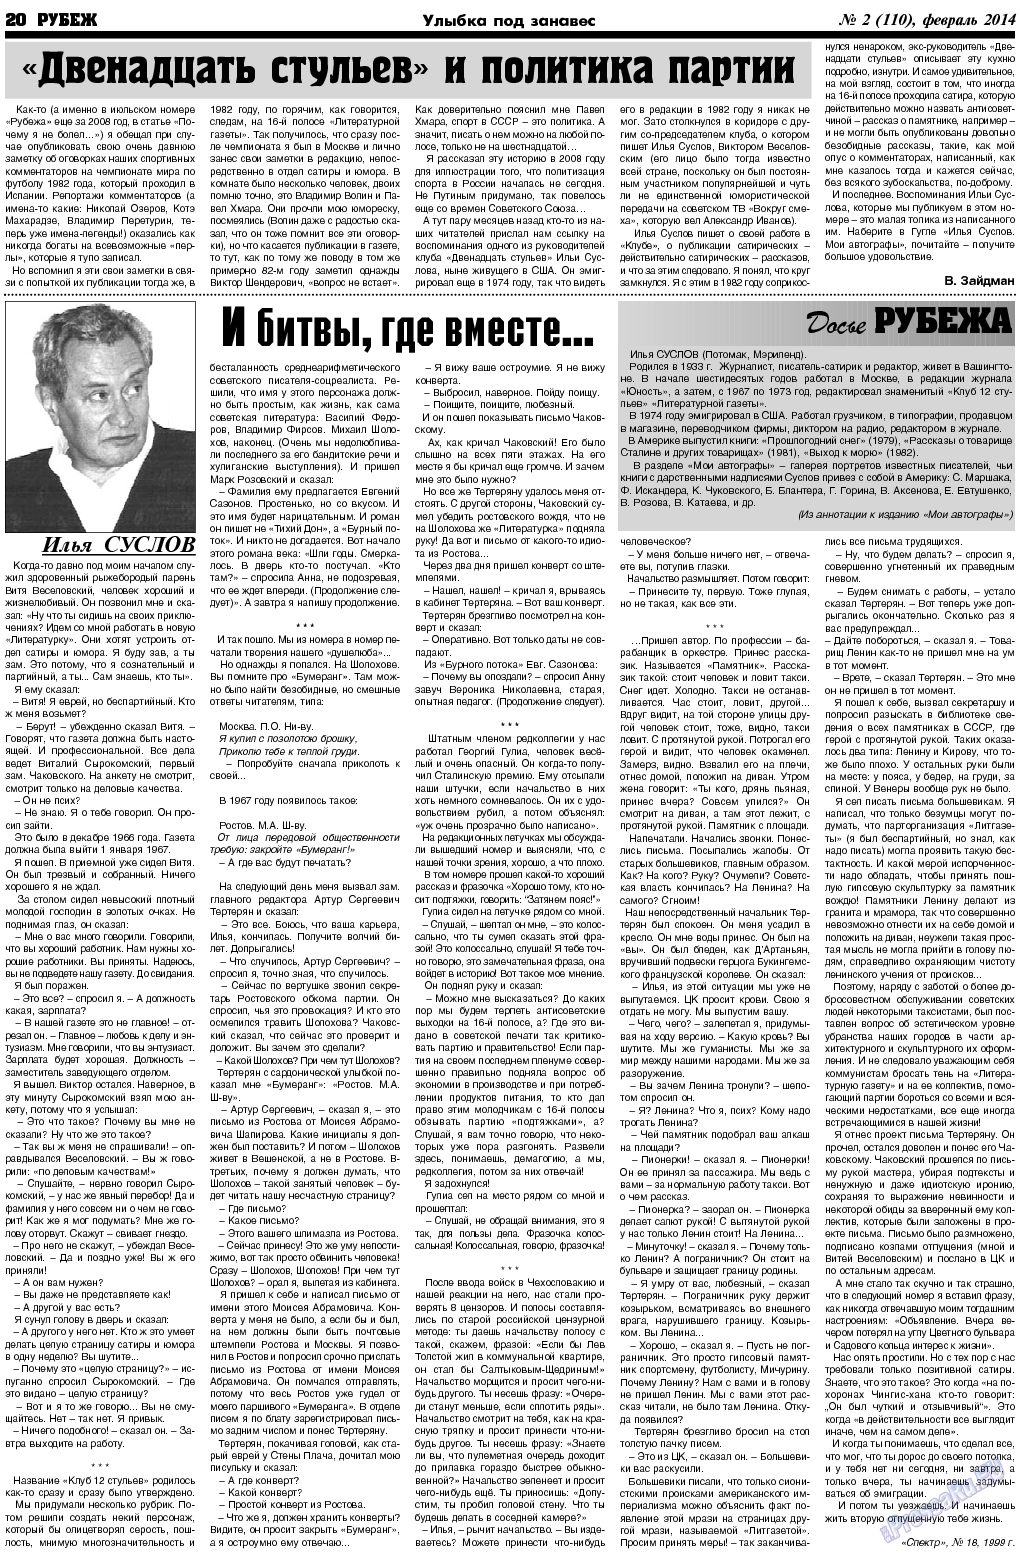 Рубеж (газета). 2014 год, номер 2, стр. 20